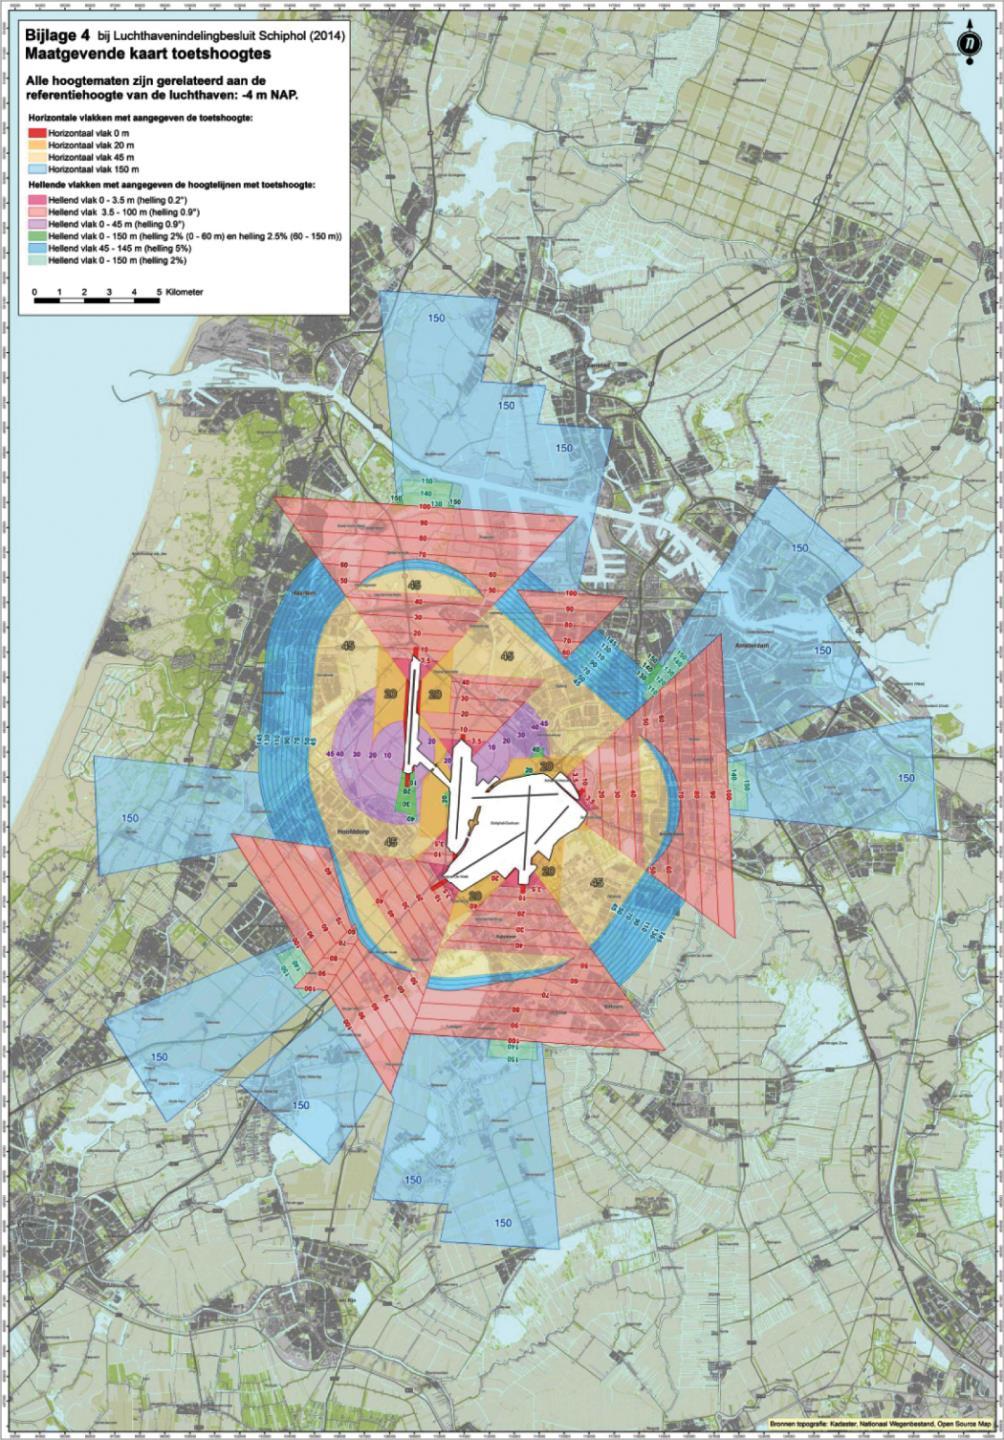 De locatie van de op te richten meetmast ligt binnen de toetsingsvlakken behorende bij de communicatie-, navigatie- en surveillanceapparatuur van Luchtverkeersleiding Nederland.